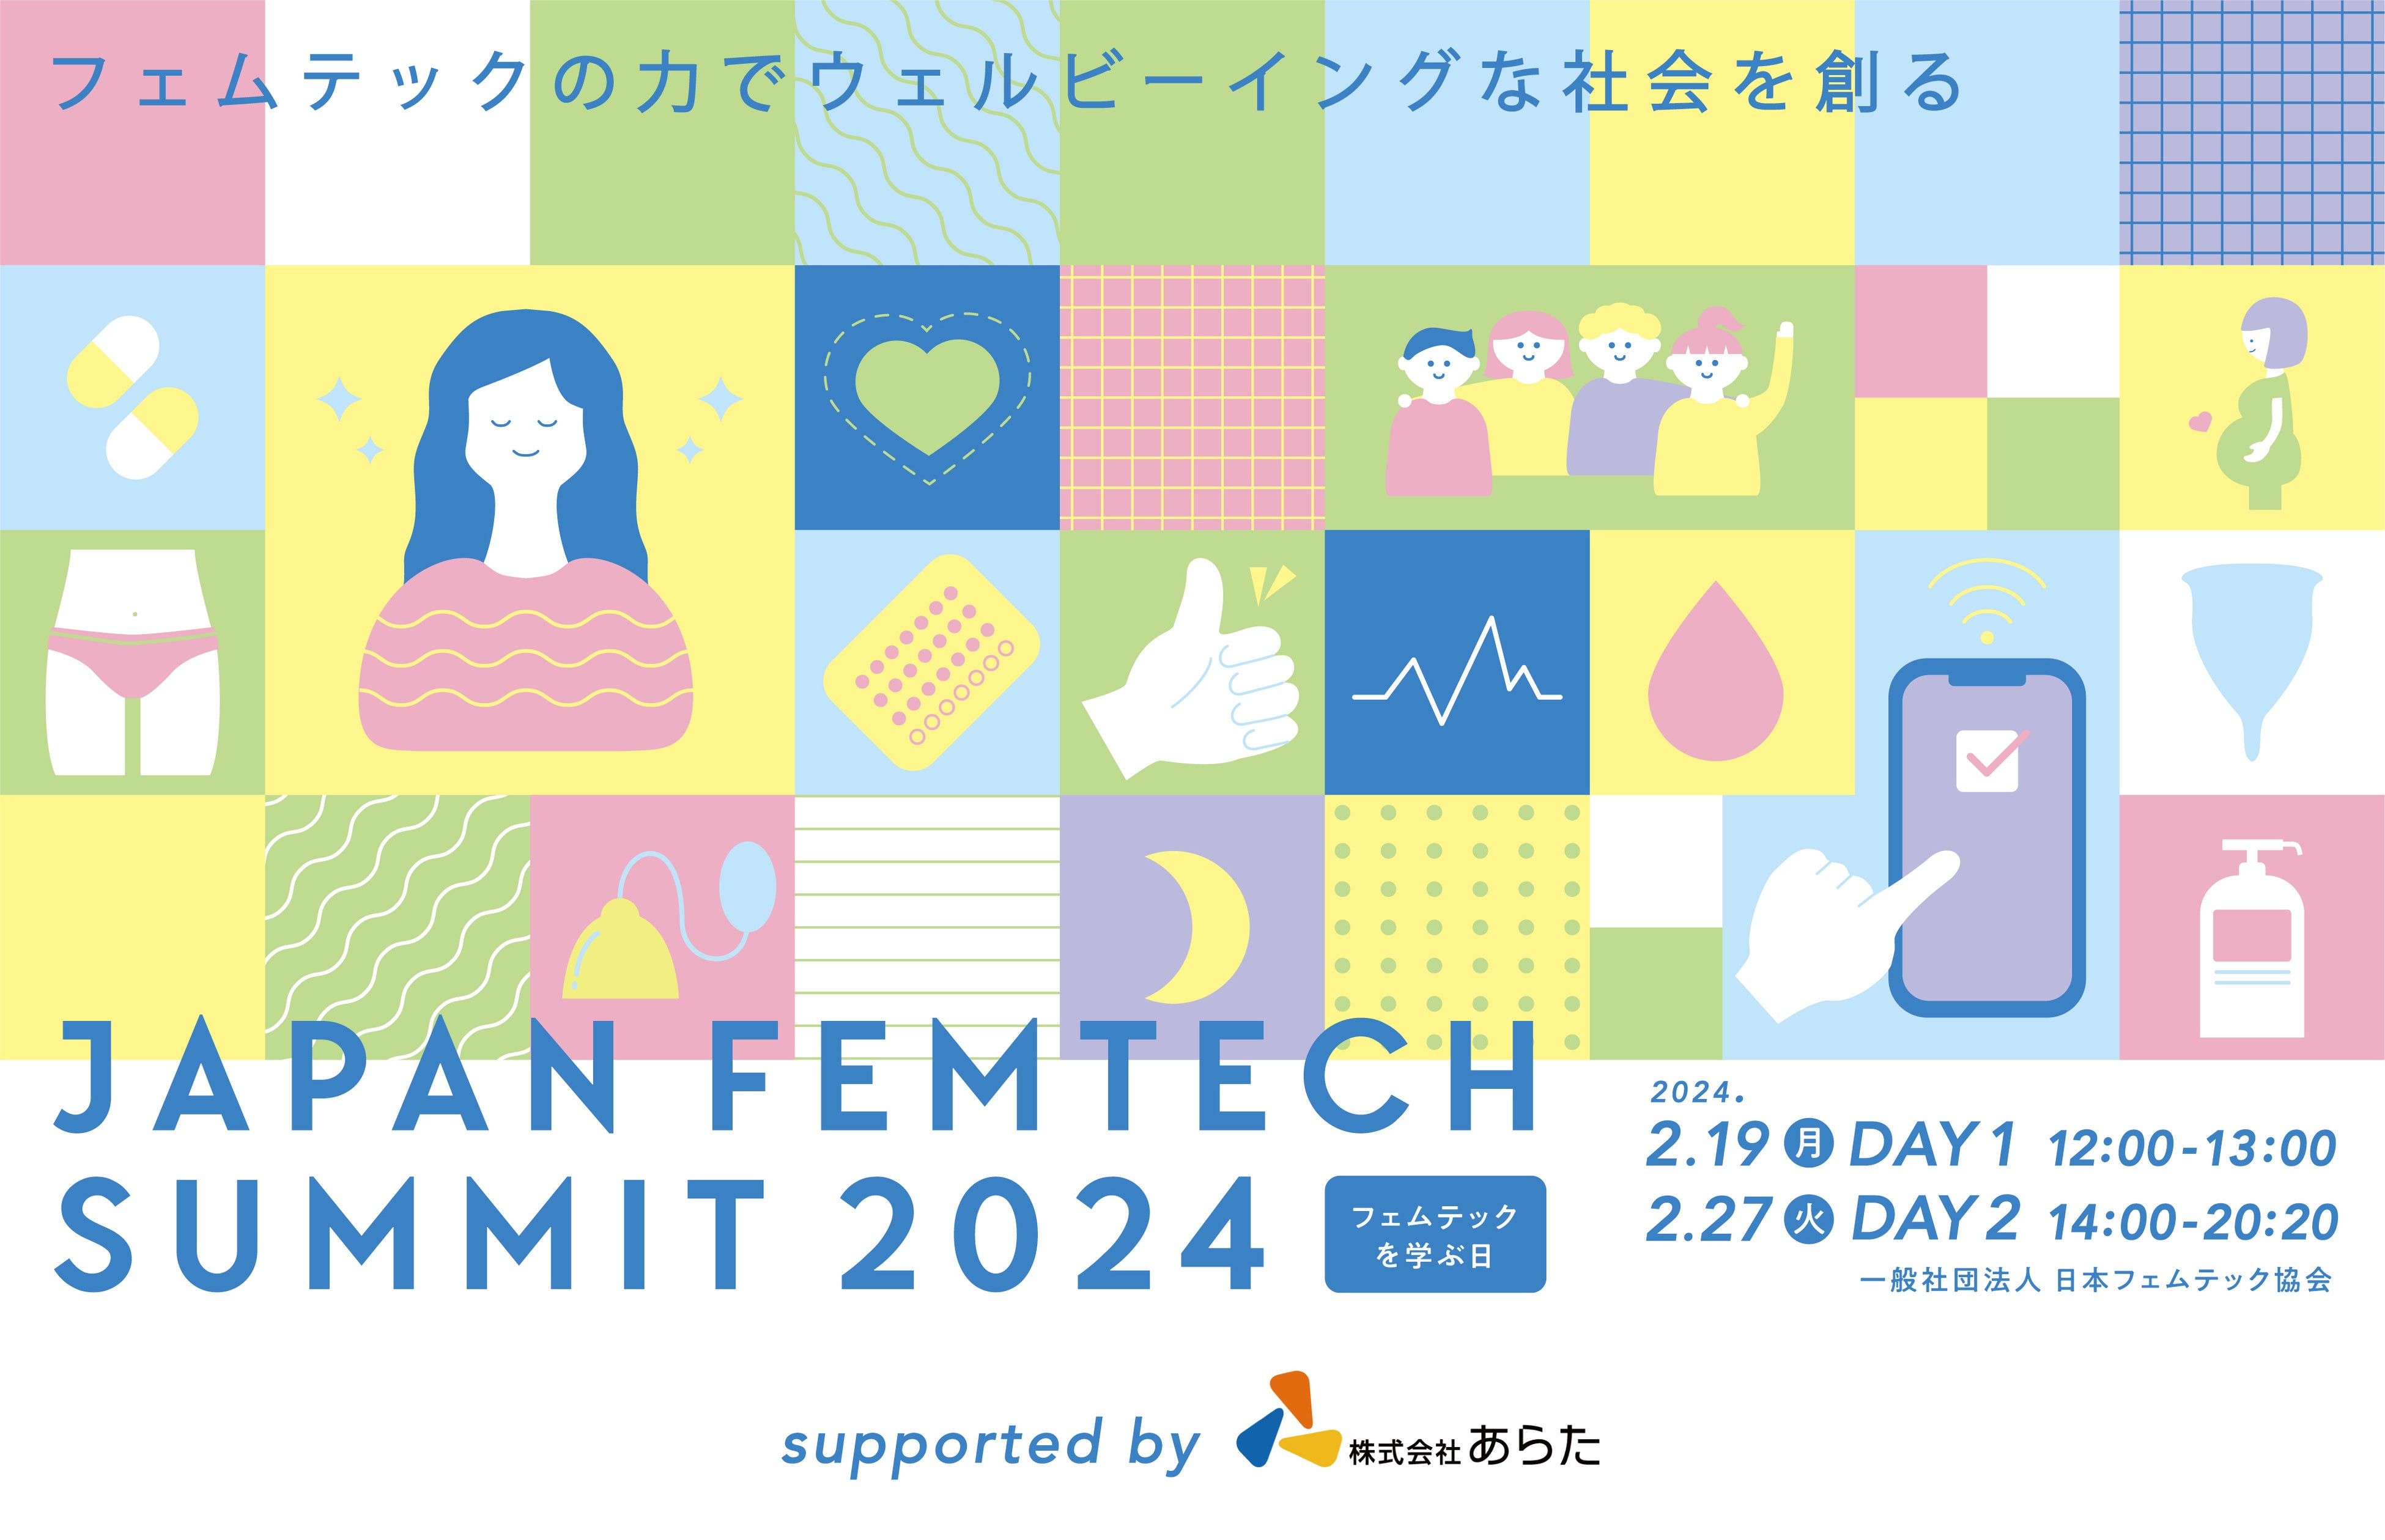 ^gɓWEDR邳JAPAN FEMTECH SUMMIT AWARD 2024^I